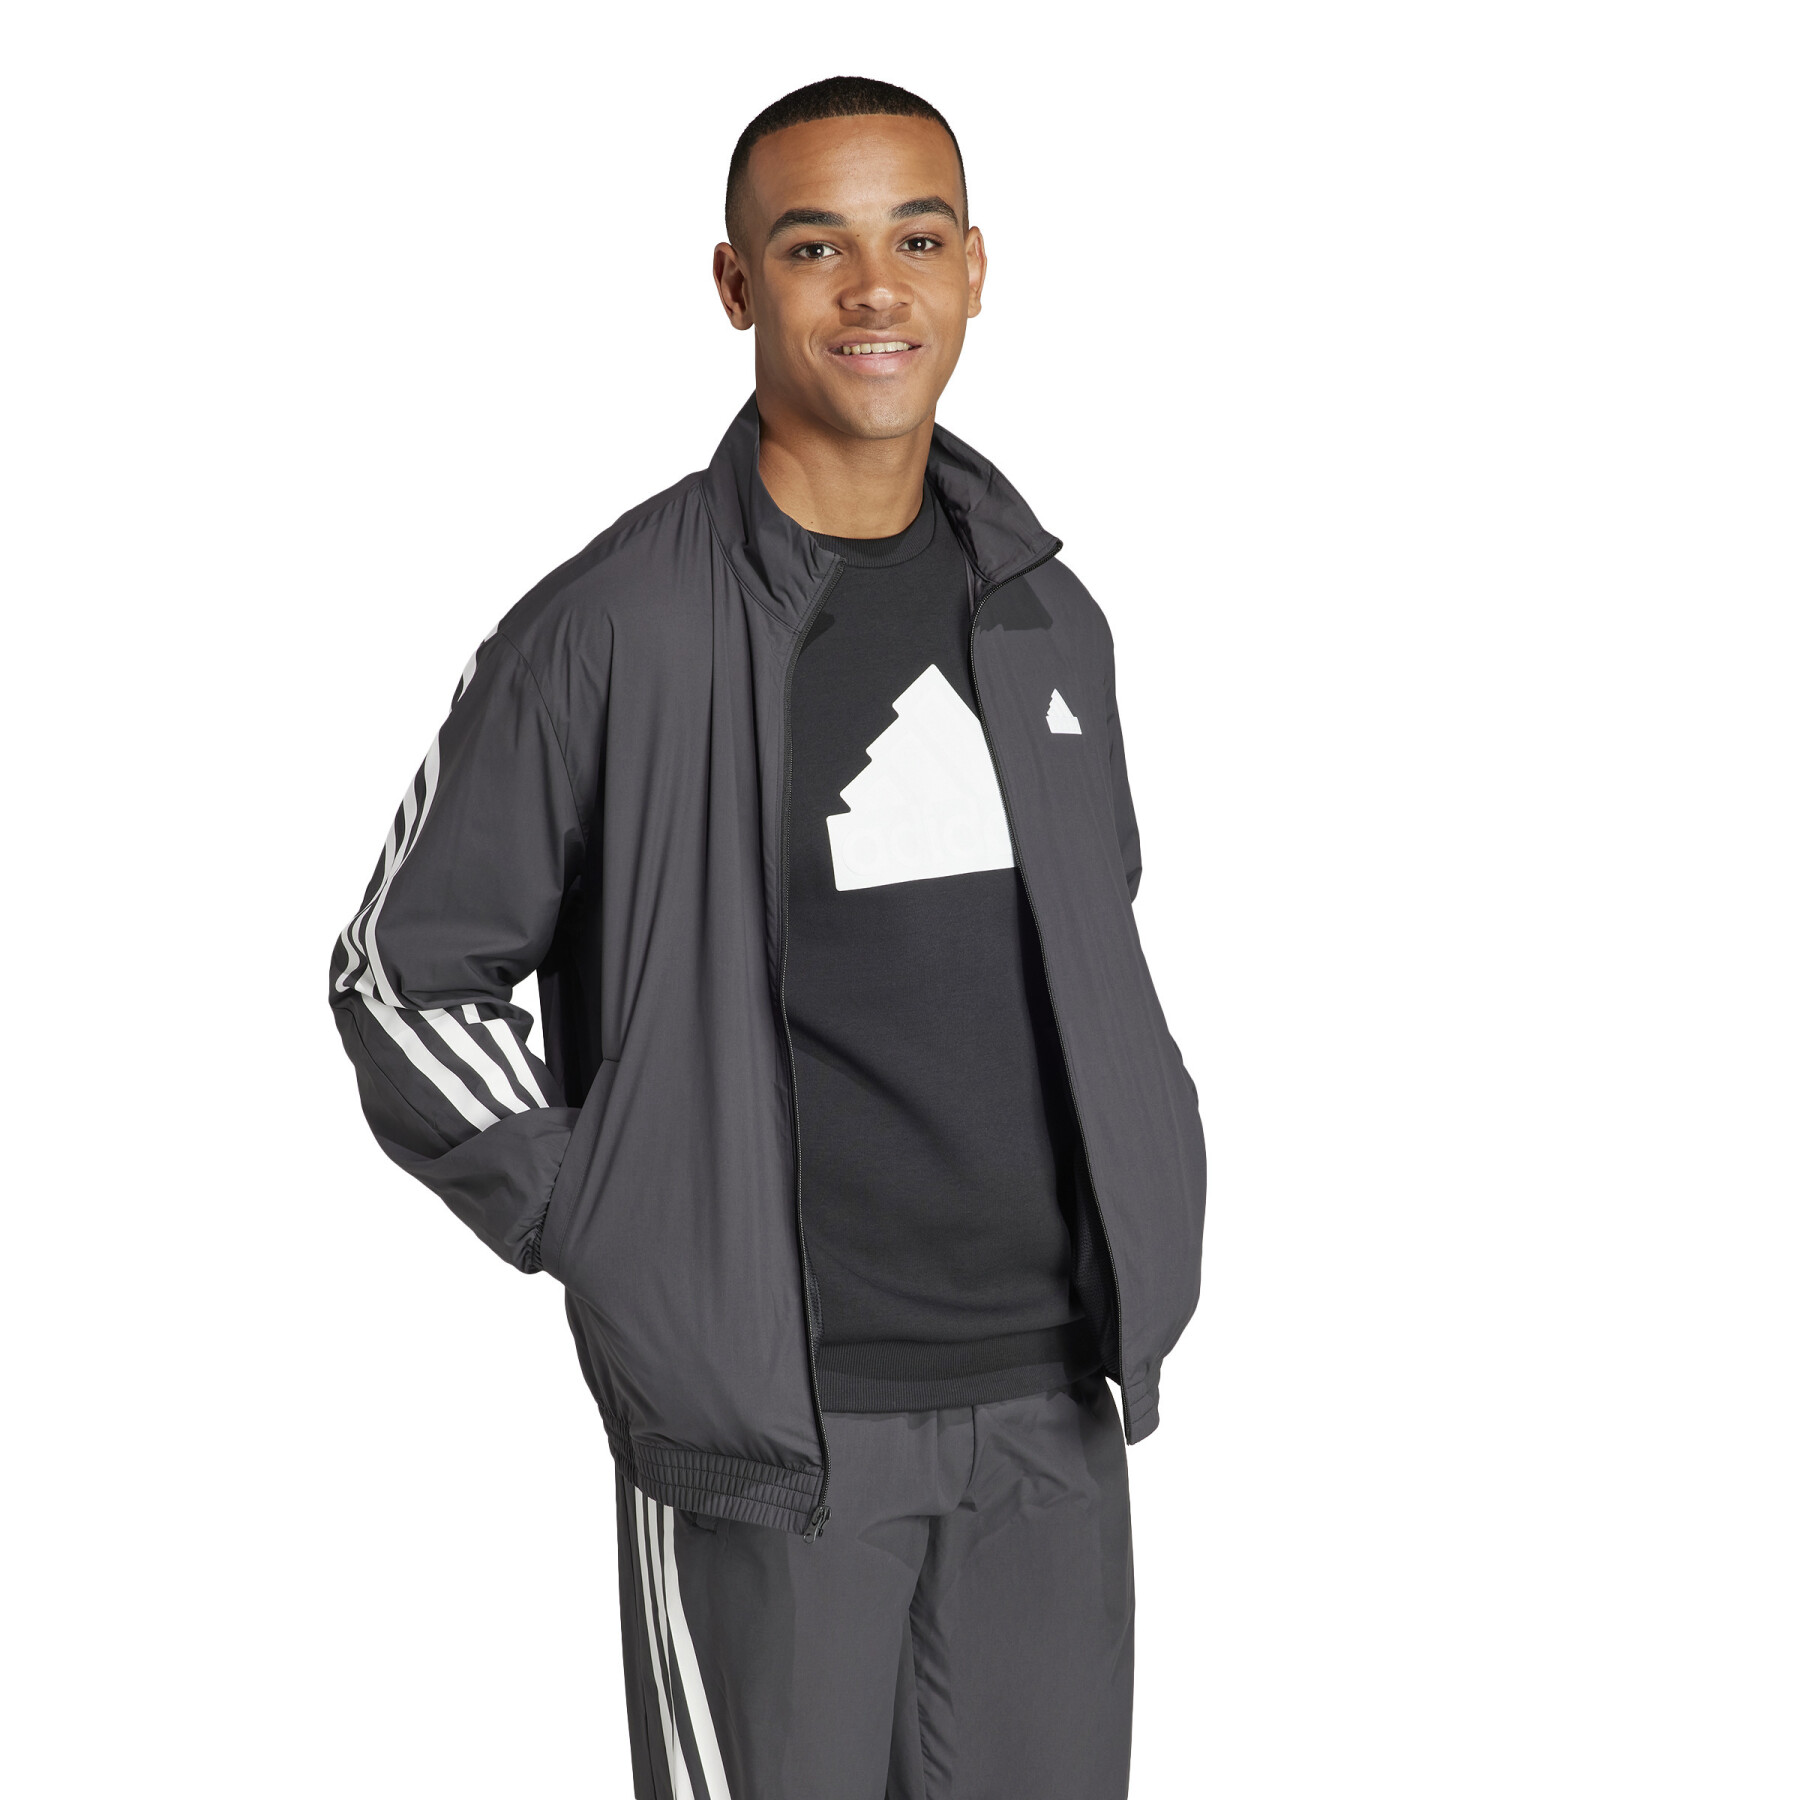 Sweat jacket adidas Future Icons 3S